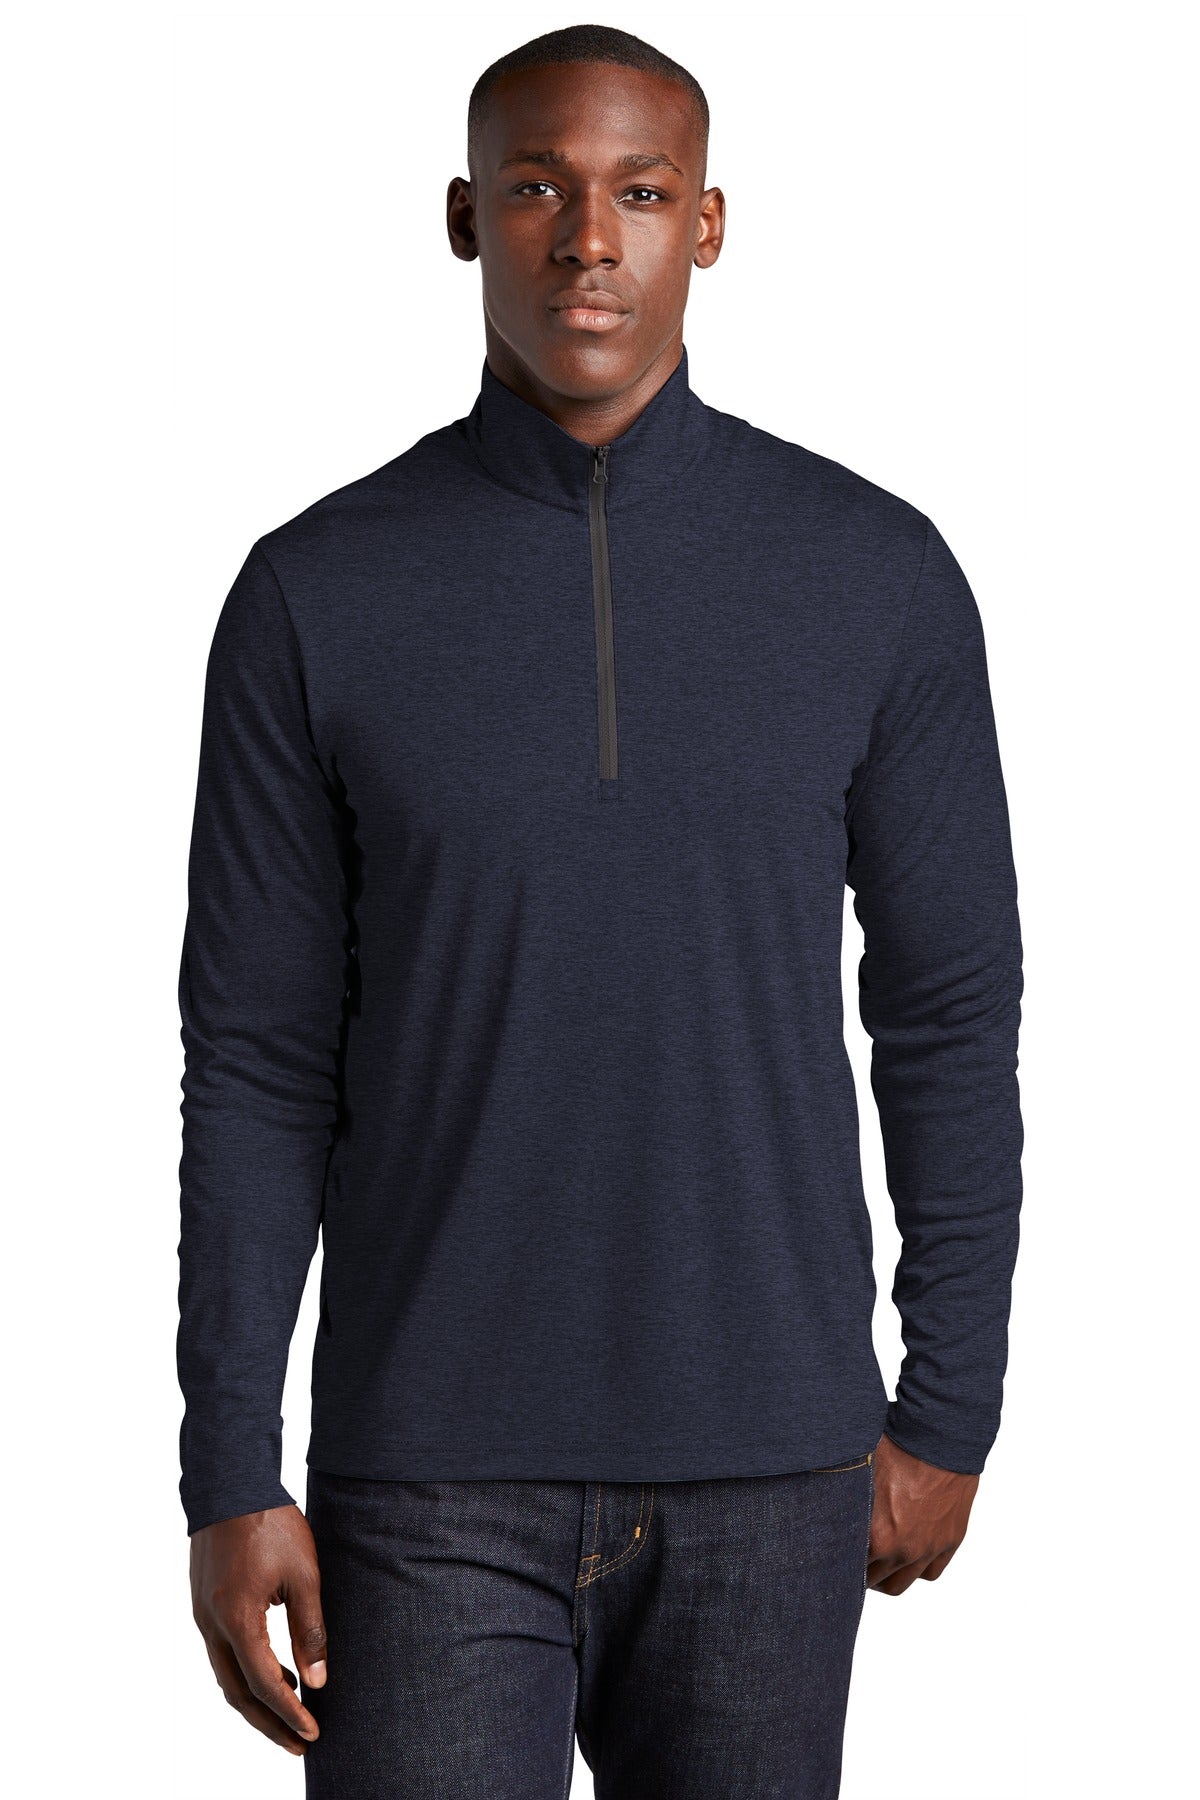 Sweatshirts/Fleece Deep Navy Heather Sport-Tek